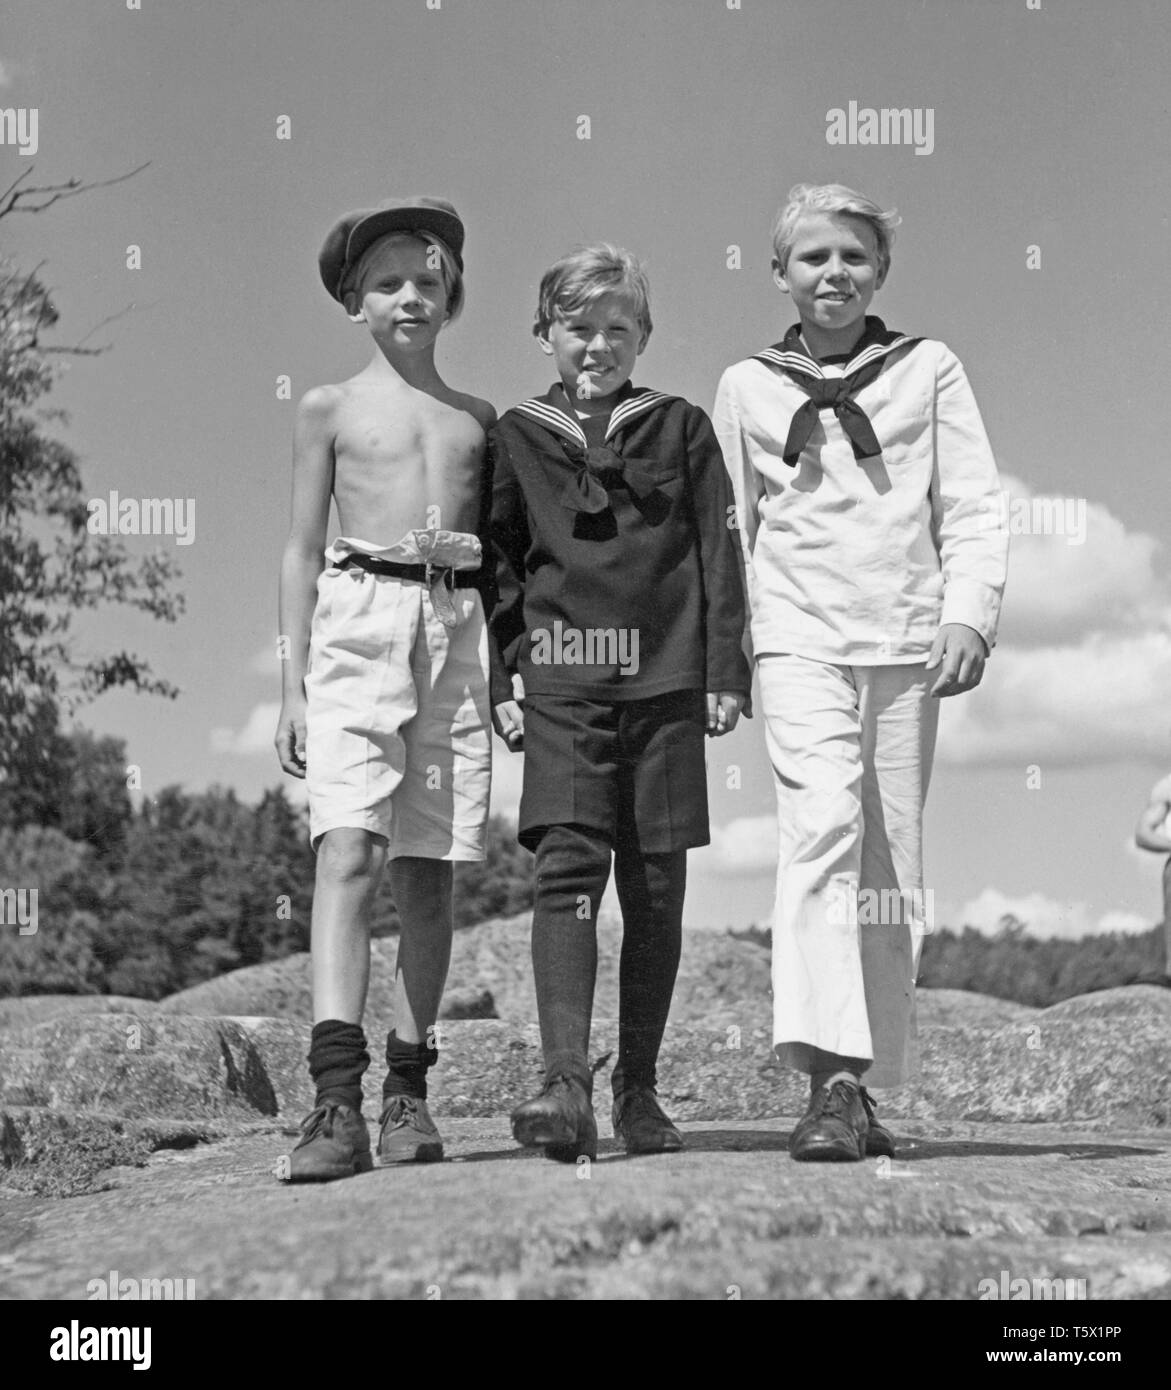 Jungen, die in den 1940er Jahren. Drei junge Jungen zusammen an einem Sommertag. In der Regel in Matrosen Outfit mit gestreiftem Kragen gekleidet. Sie sind Extras auf einen Film set 1945. Schweden. Kristoffersson P50-1 Stockfoto